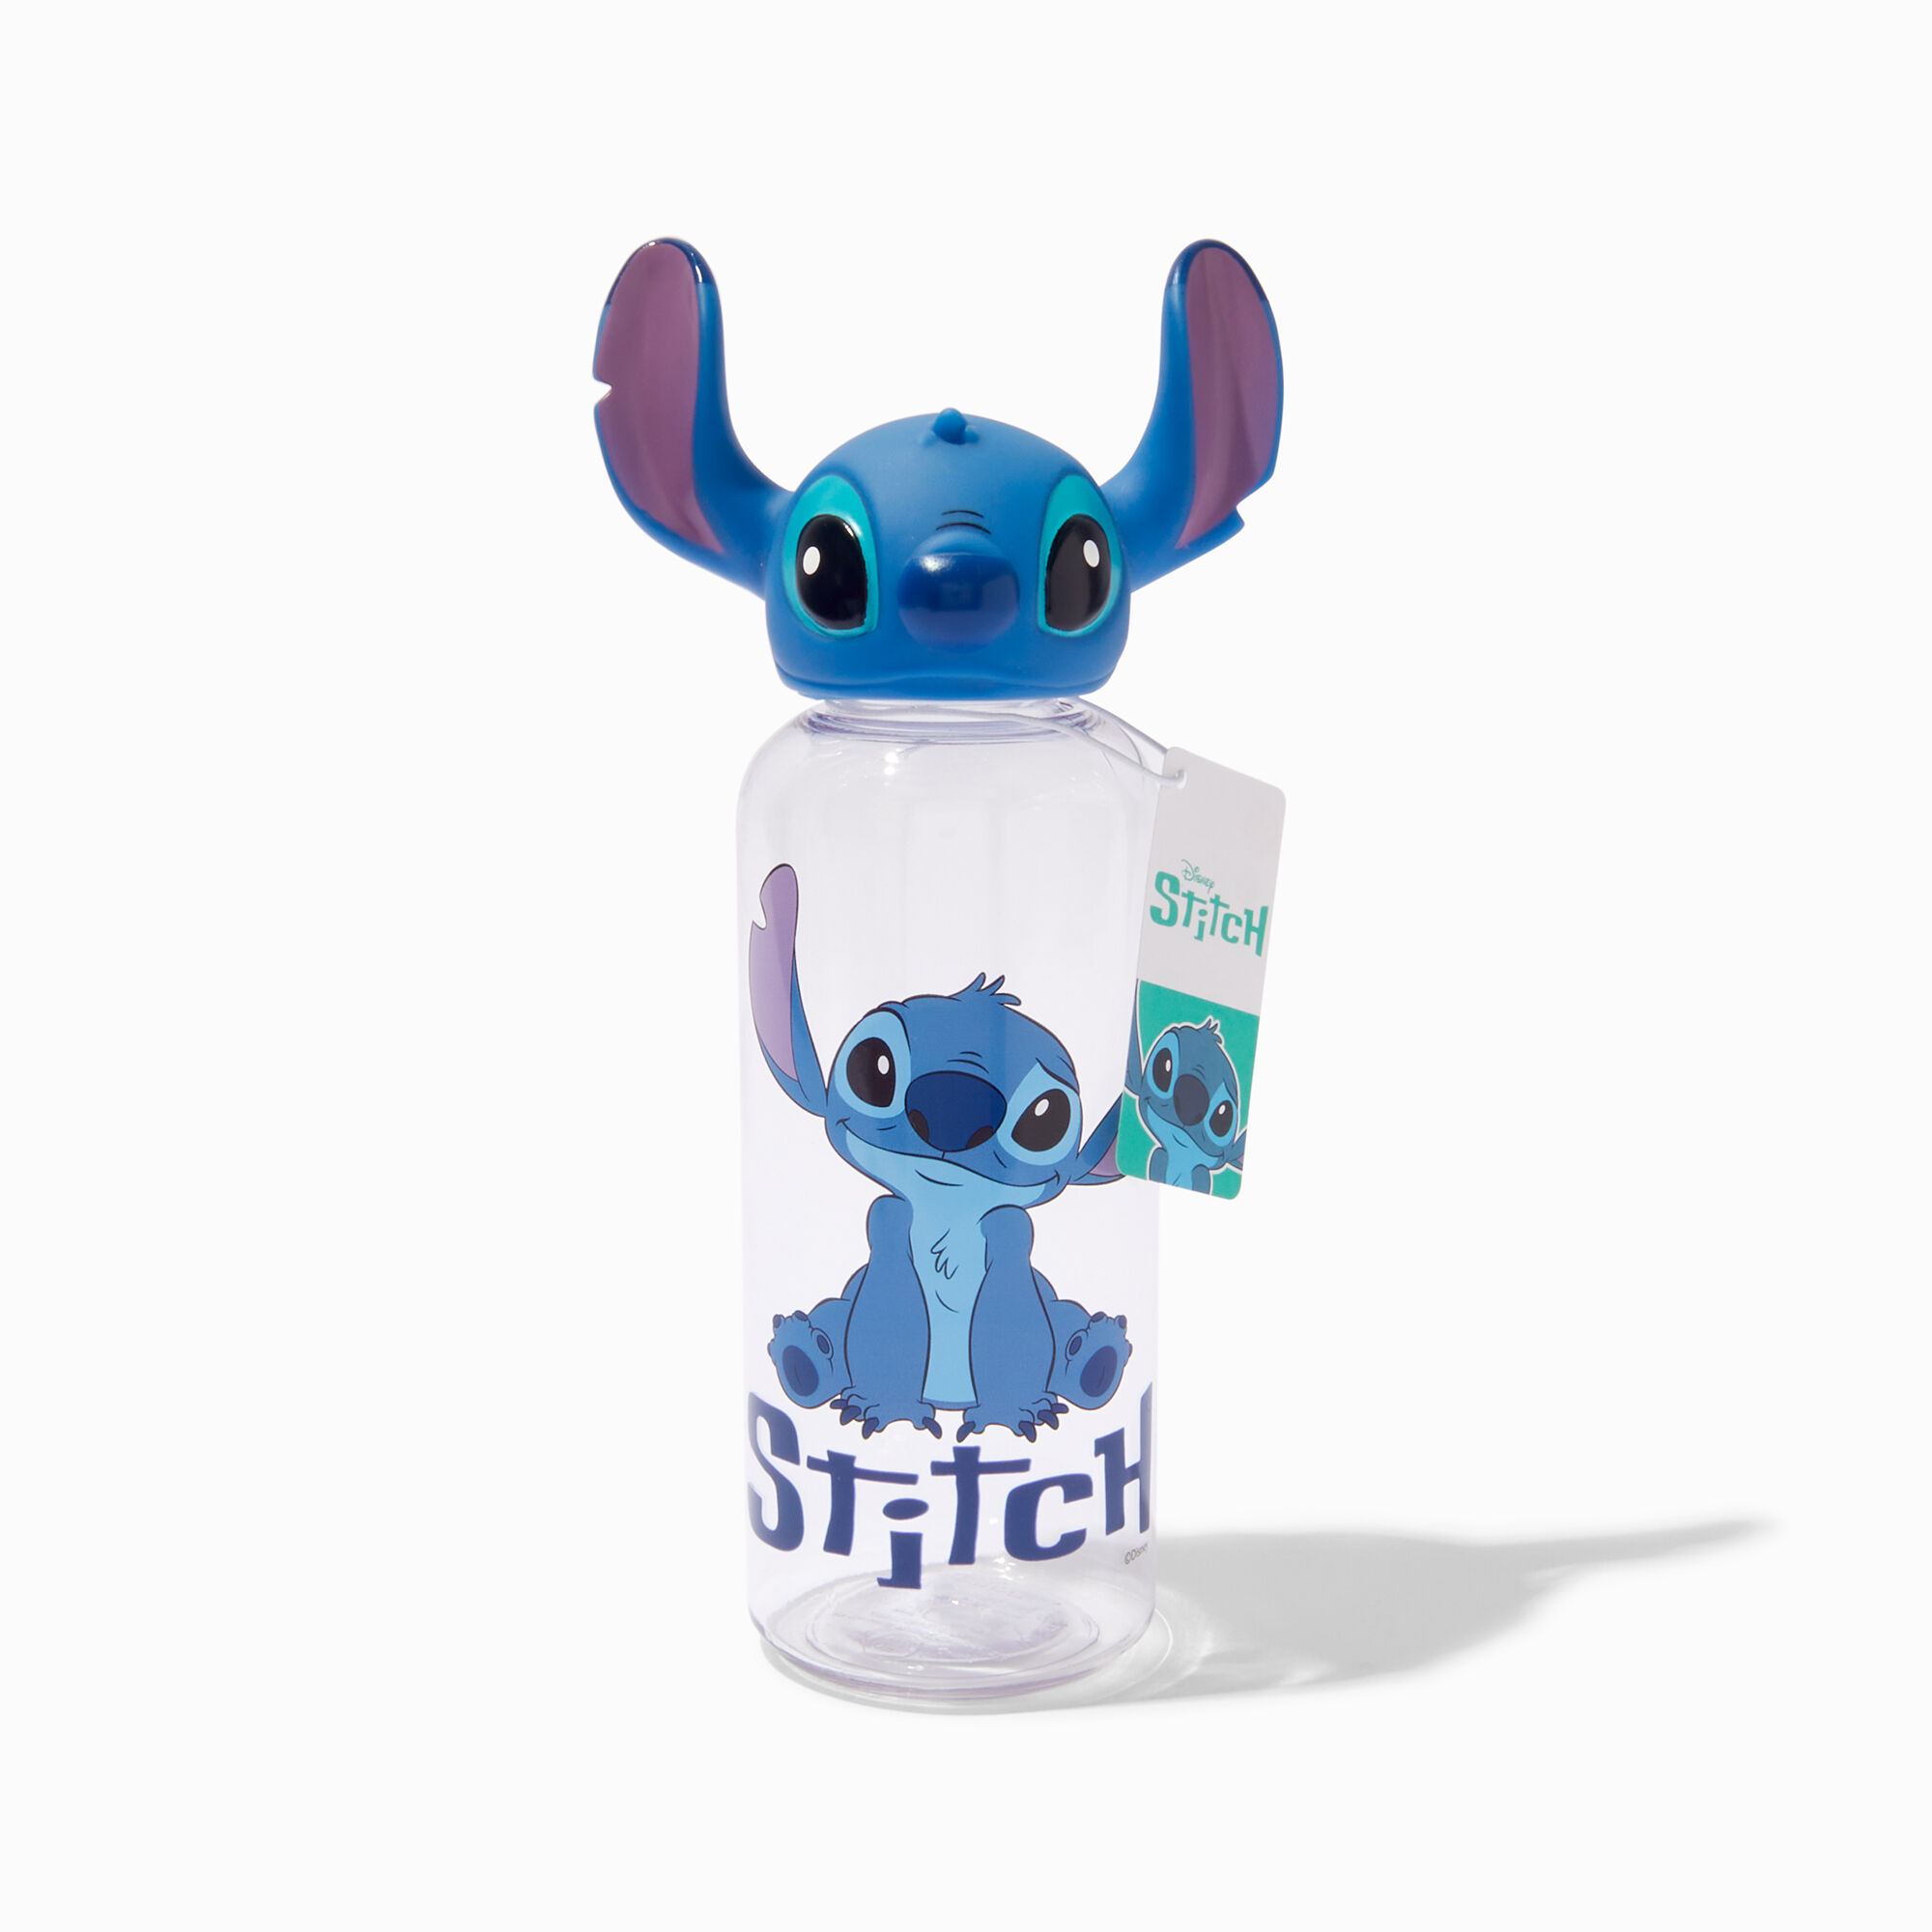 View Claires Disney Stitch 3D Tumbler information